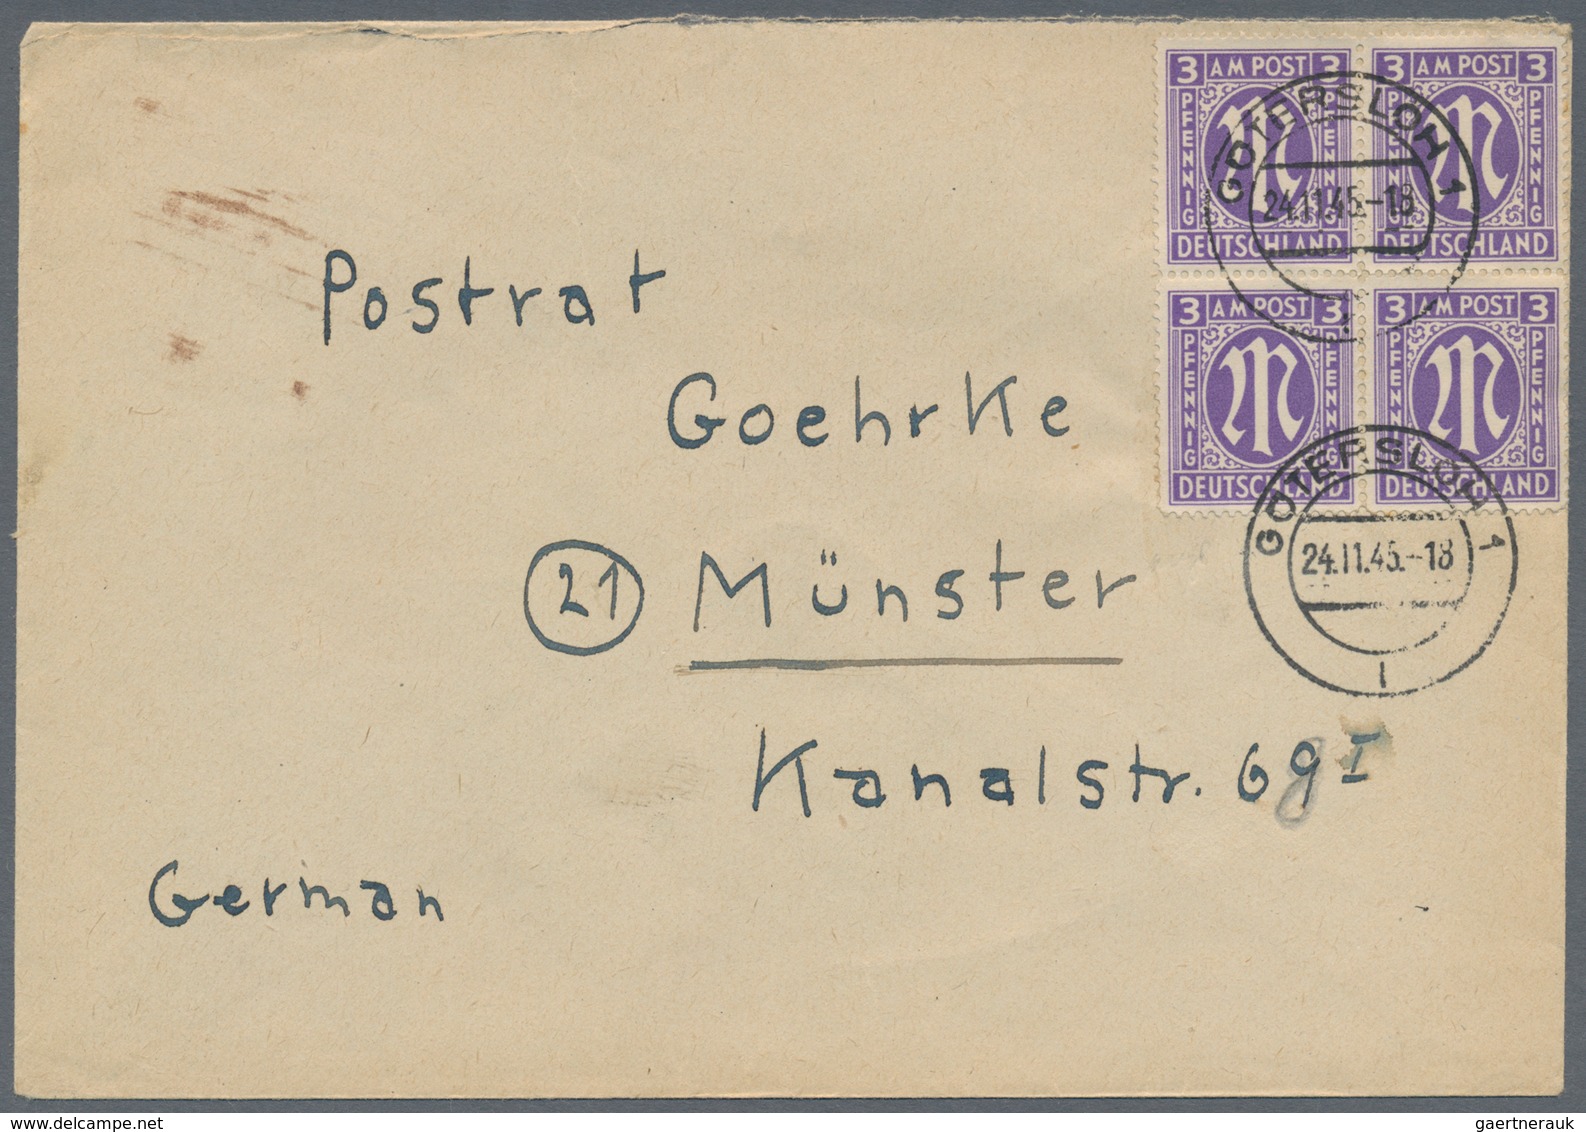 Bizone: 1945/1946, AM-POST, vielseitiger Bestand von ca. 480 Bedarfs-Briefen/-Karten in sehr guter V